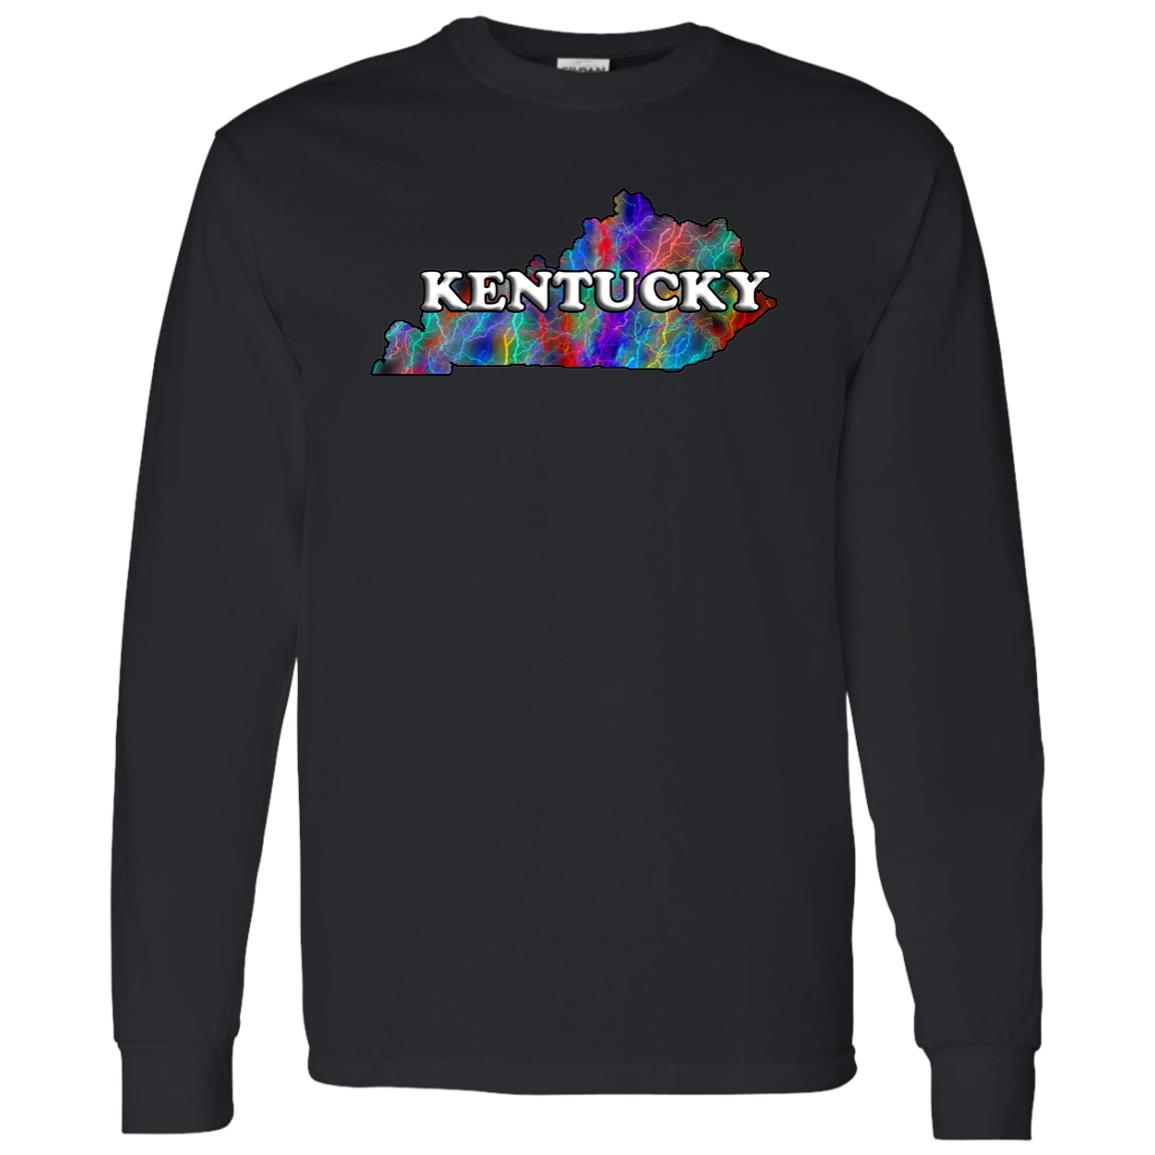 Kentucky Long Sleeve State T-Shirt